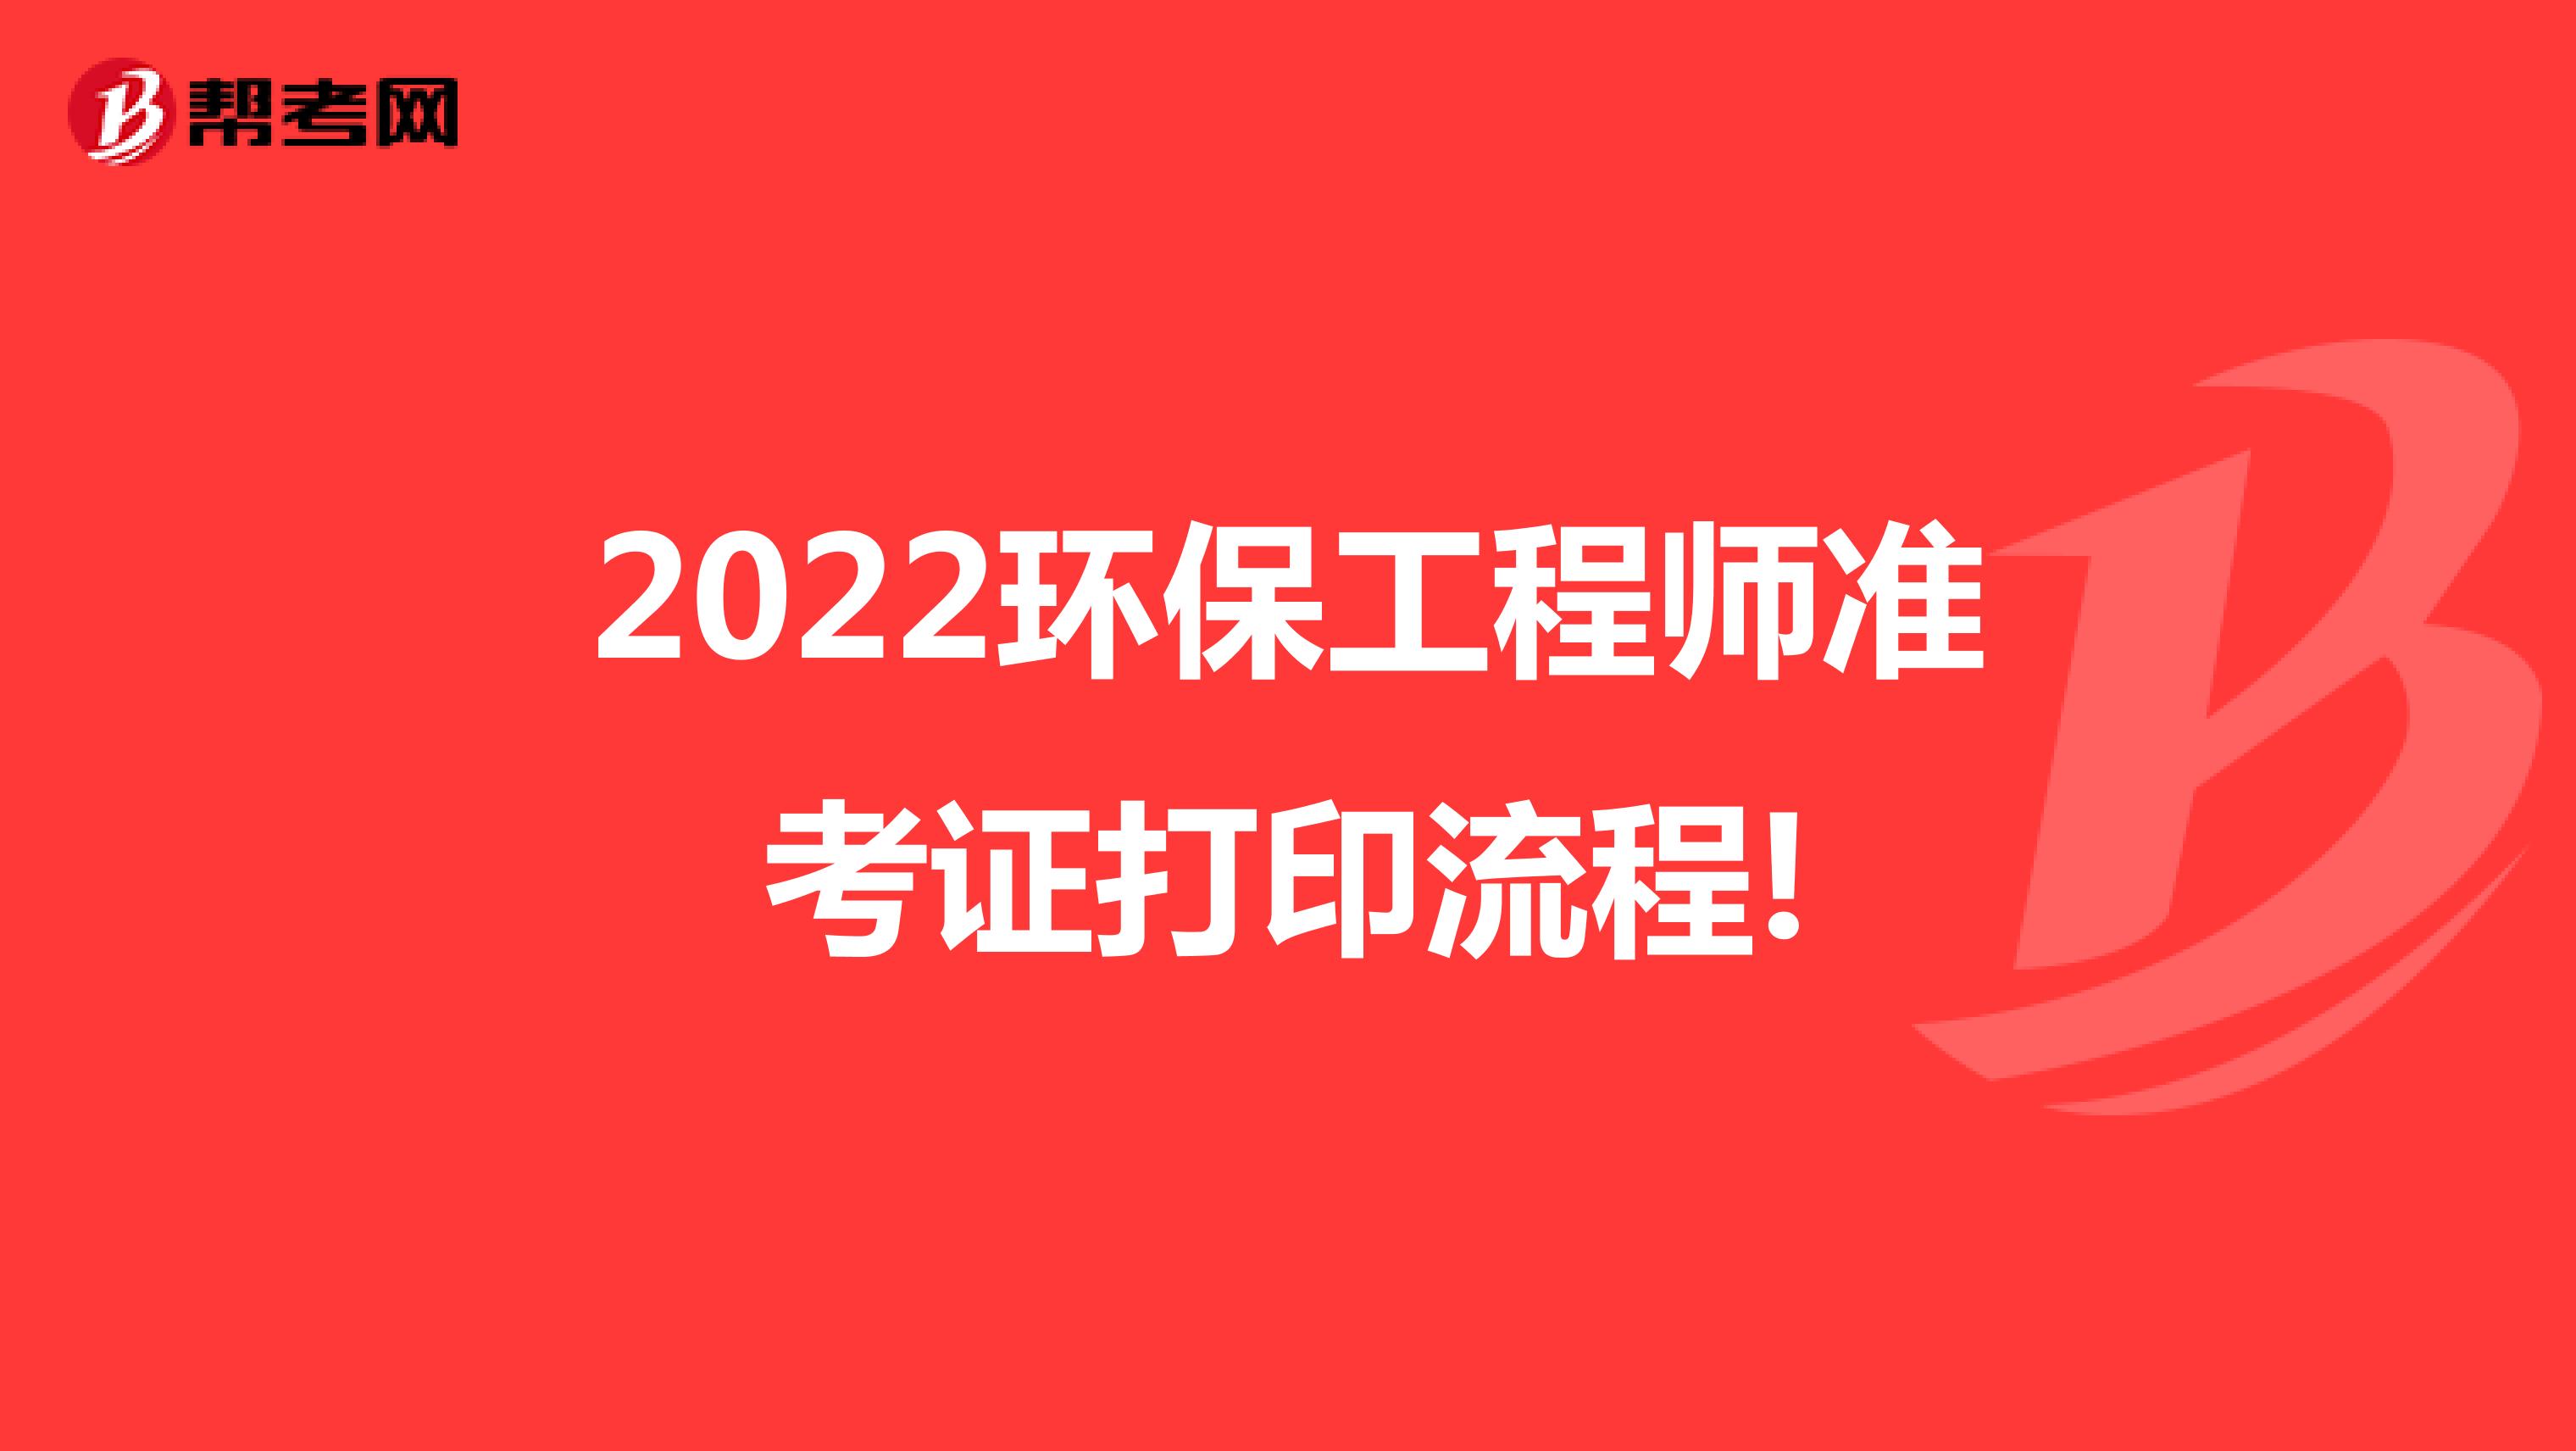 2022环保工程师准考证打印流程!